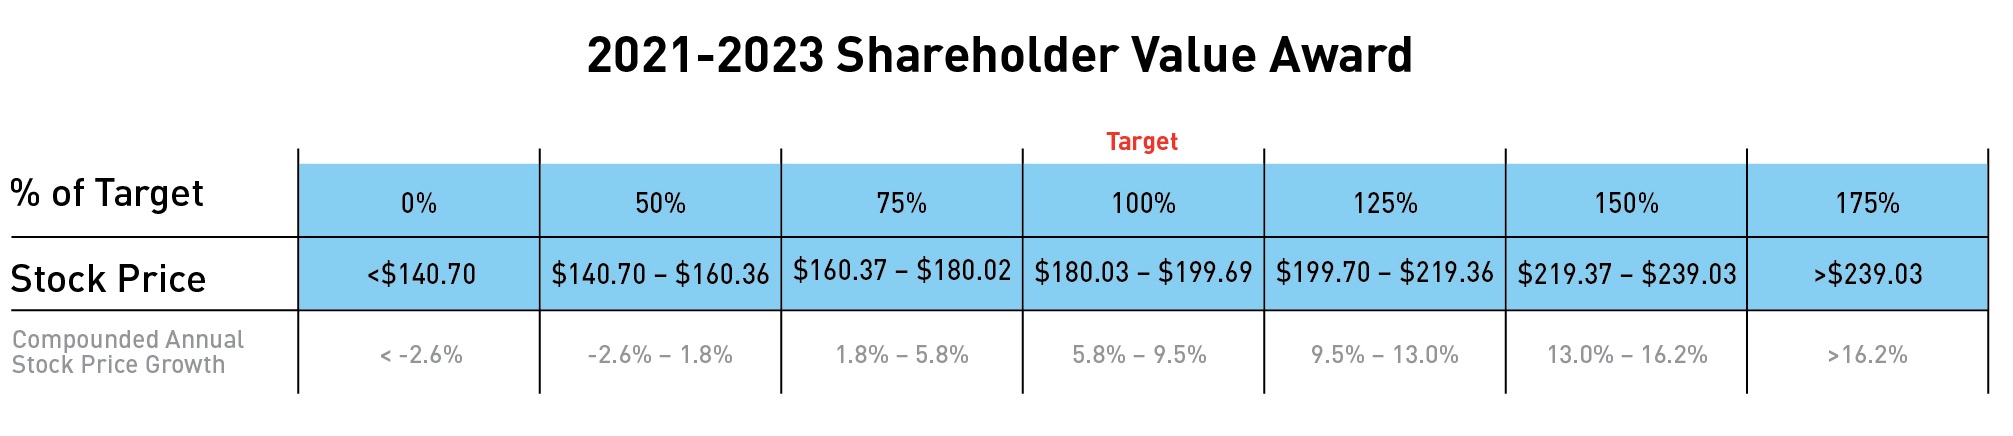 shareholdervalueaward48.jpg